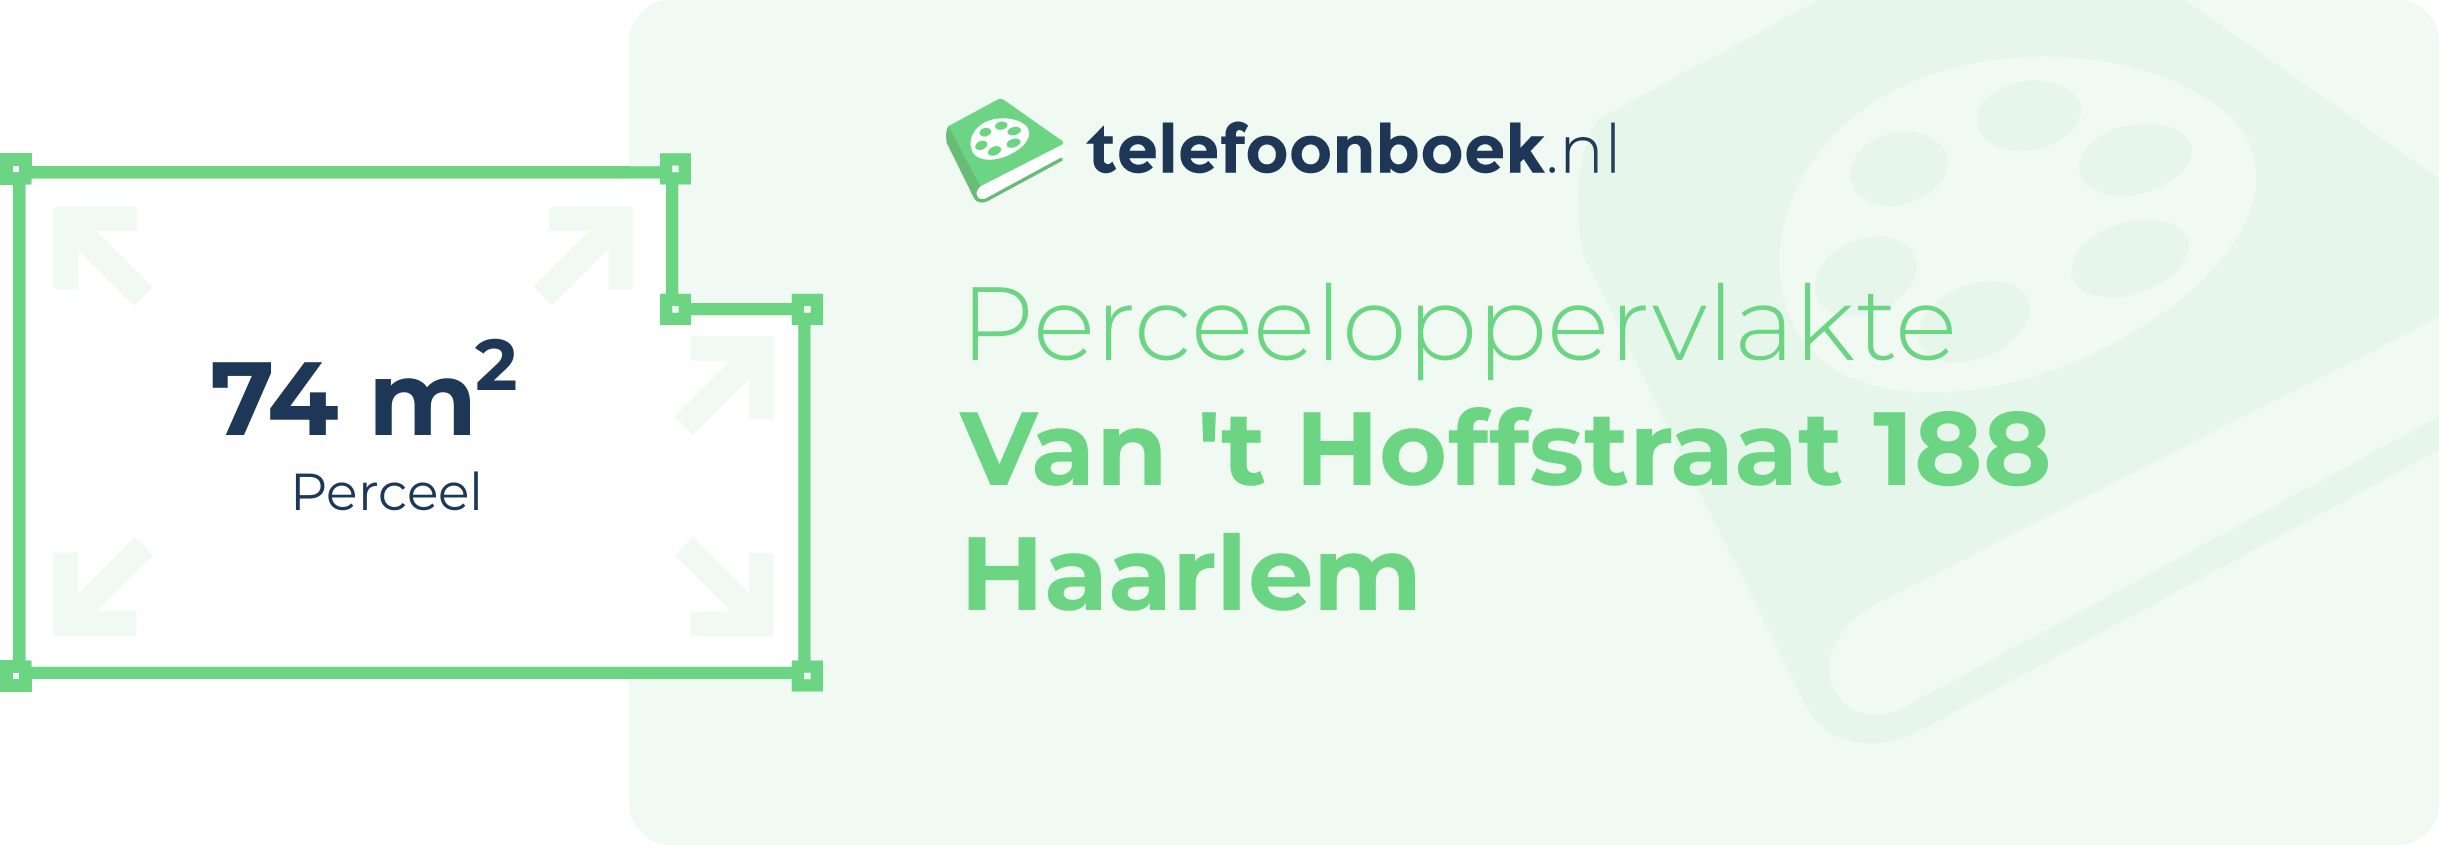 Perceeloppervlakte Van 't Hoffstraat 188 Haarlem